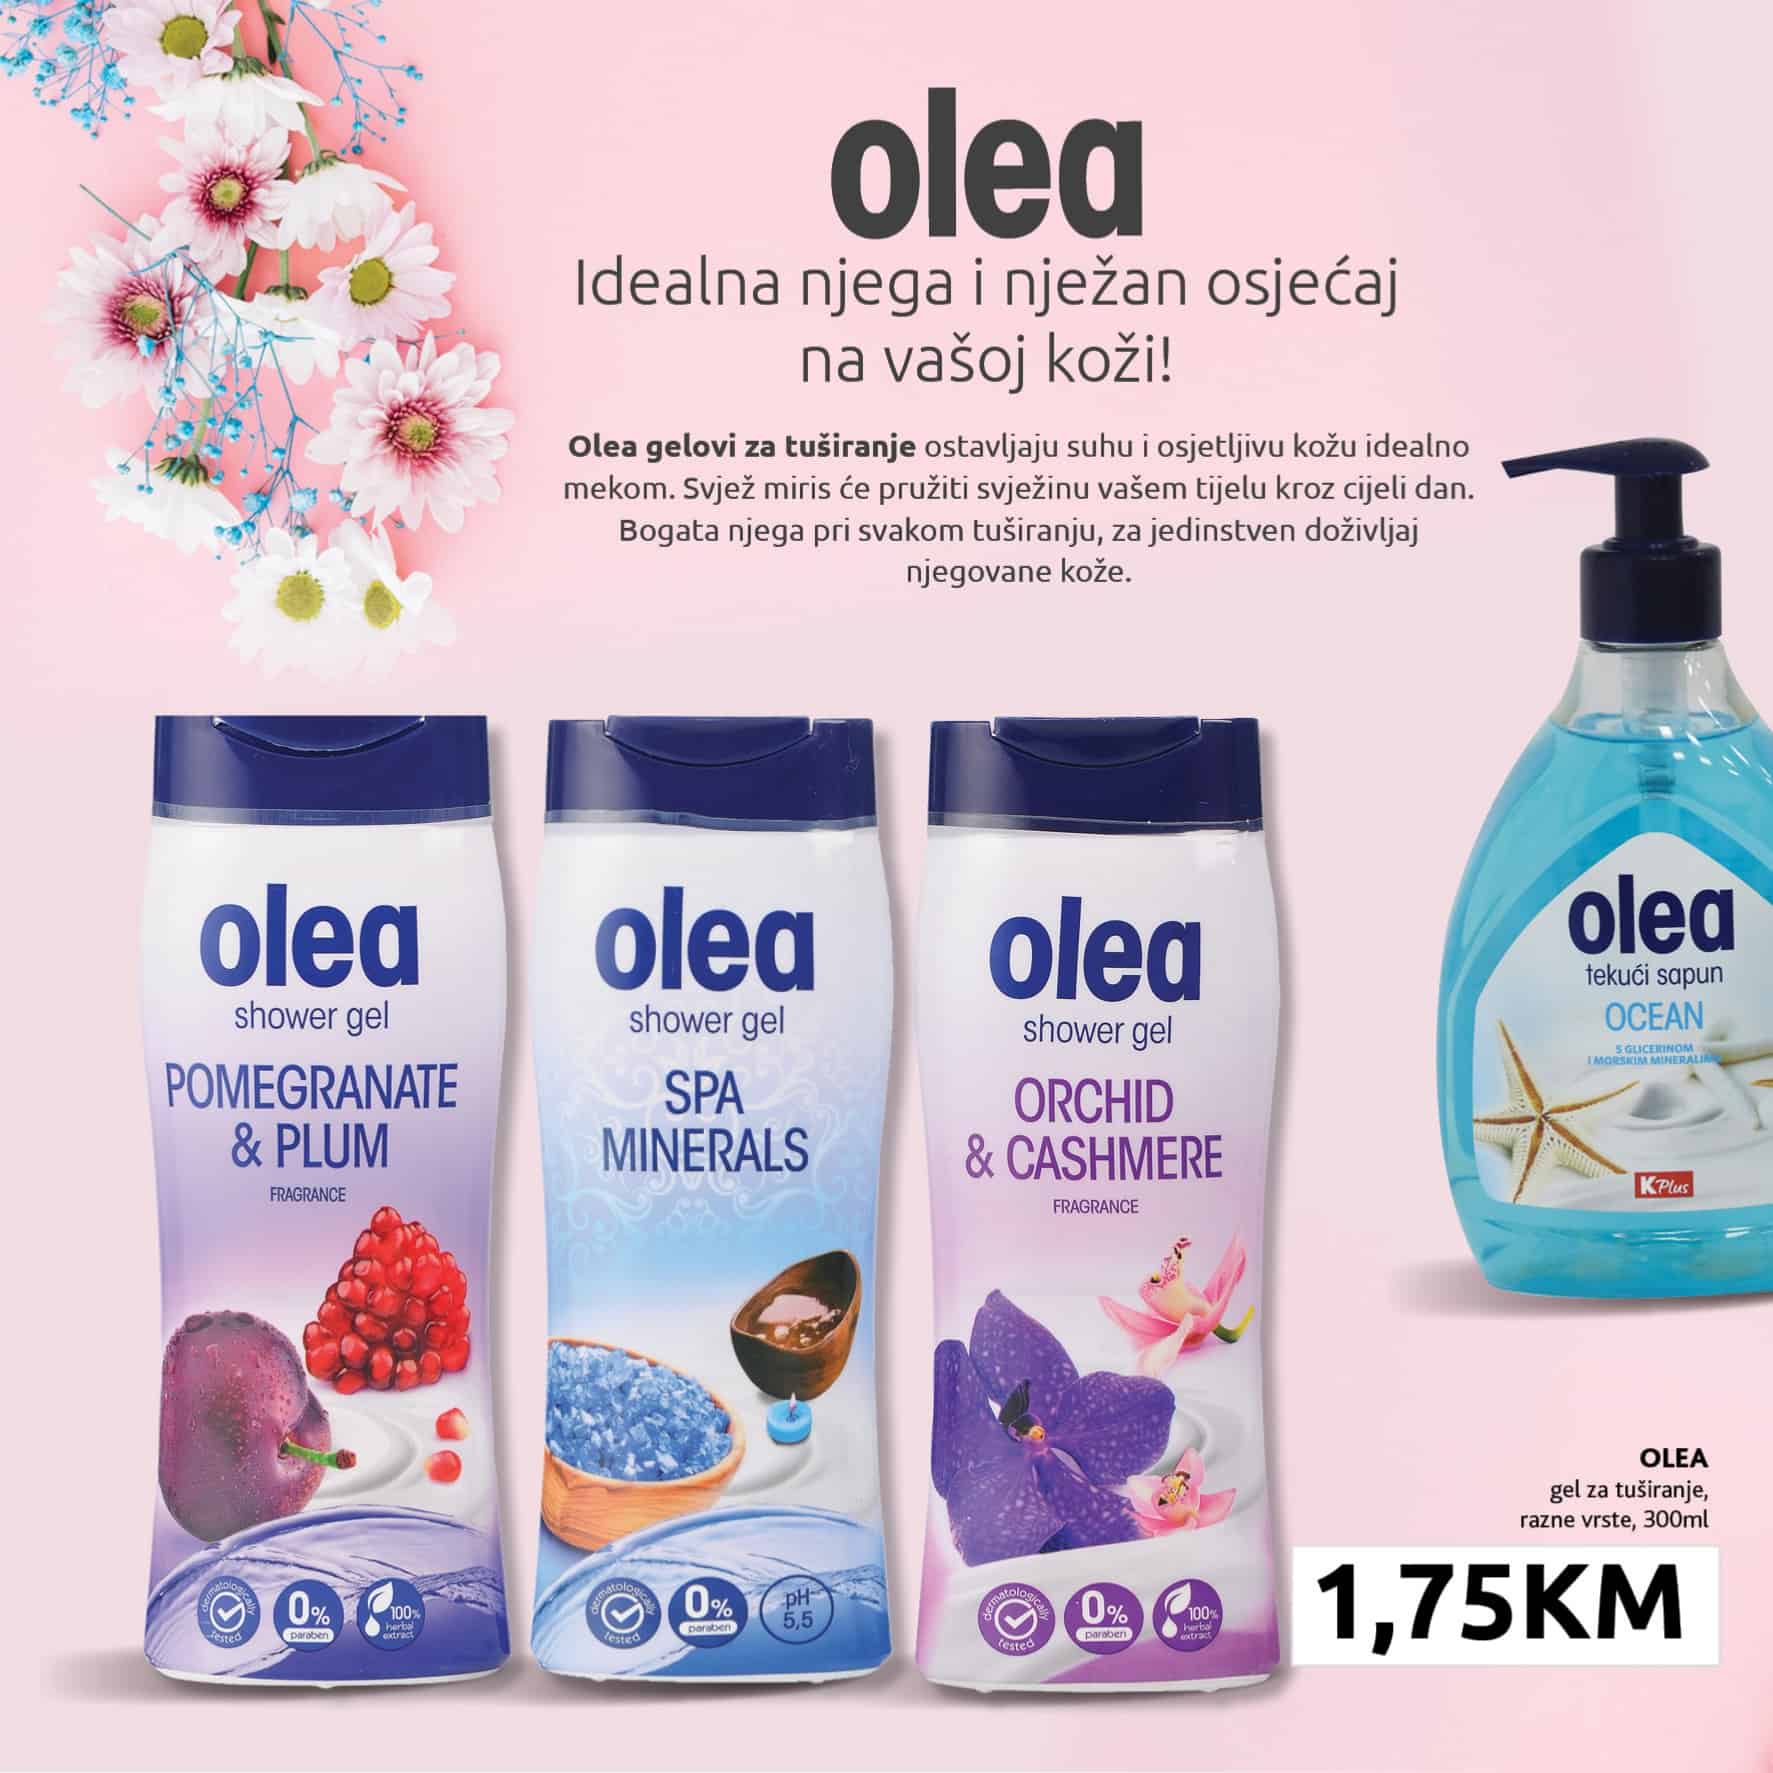 Konzum katalog donosi nam OLEA sampone i sapune za ruke po akcijskim ciijenama!